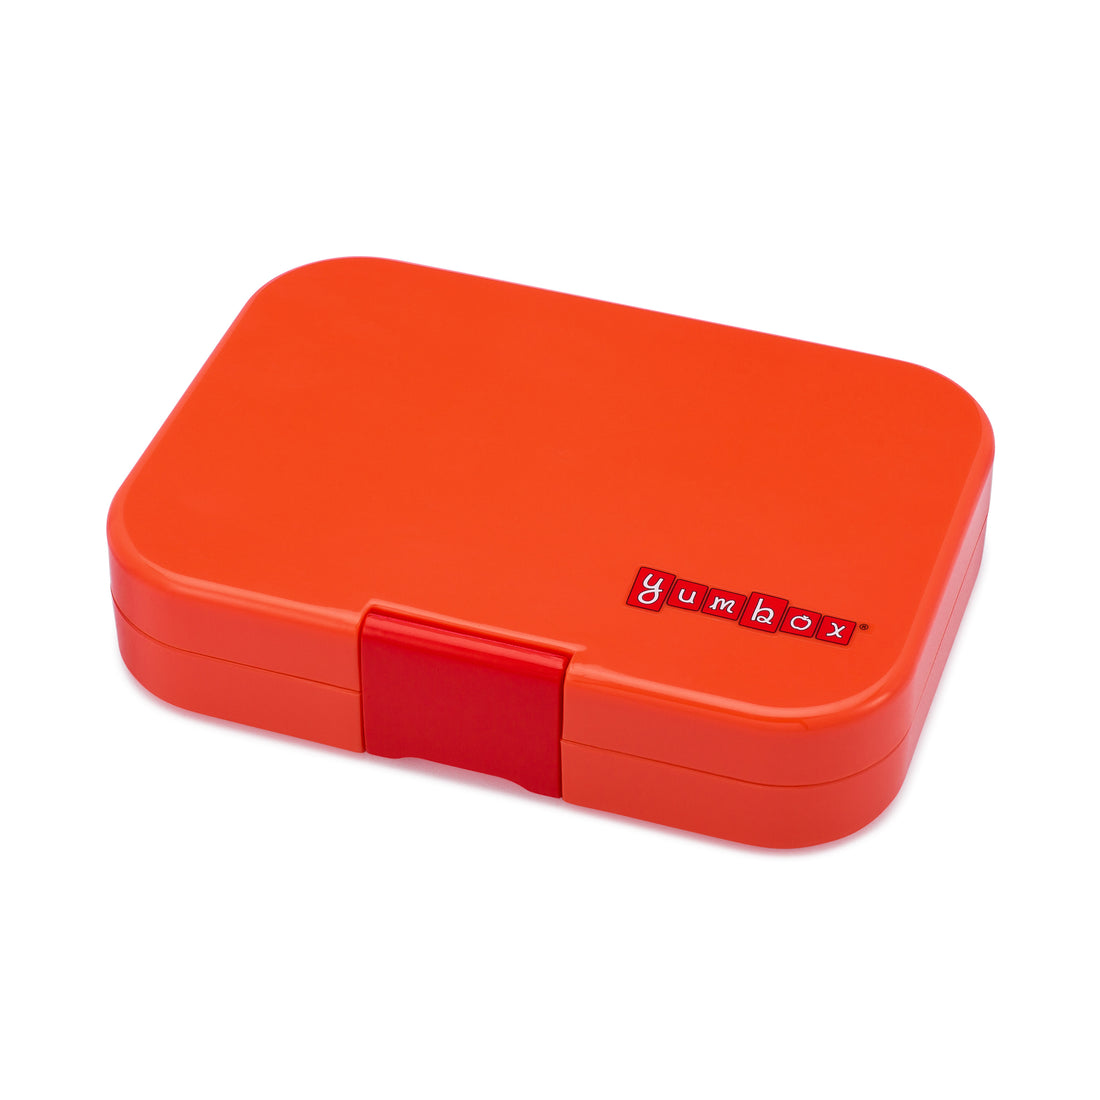 yumbox-original-saffron-orange-6-compartment-lunch-box- (1)